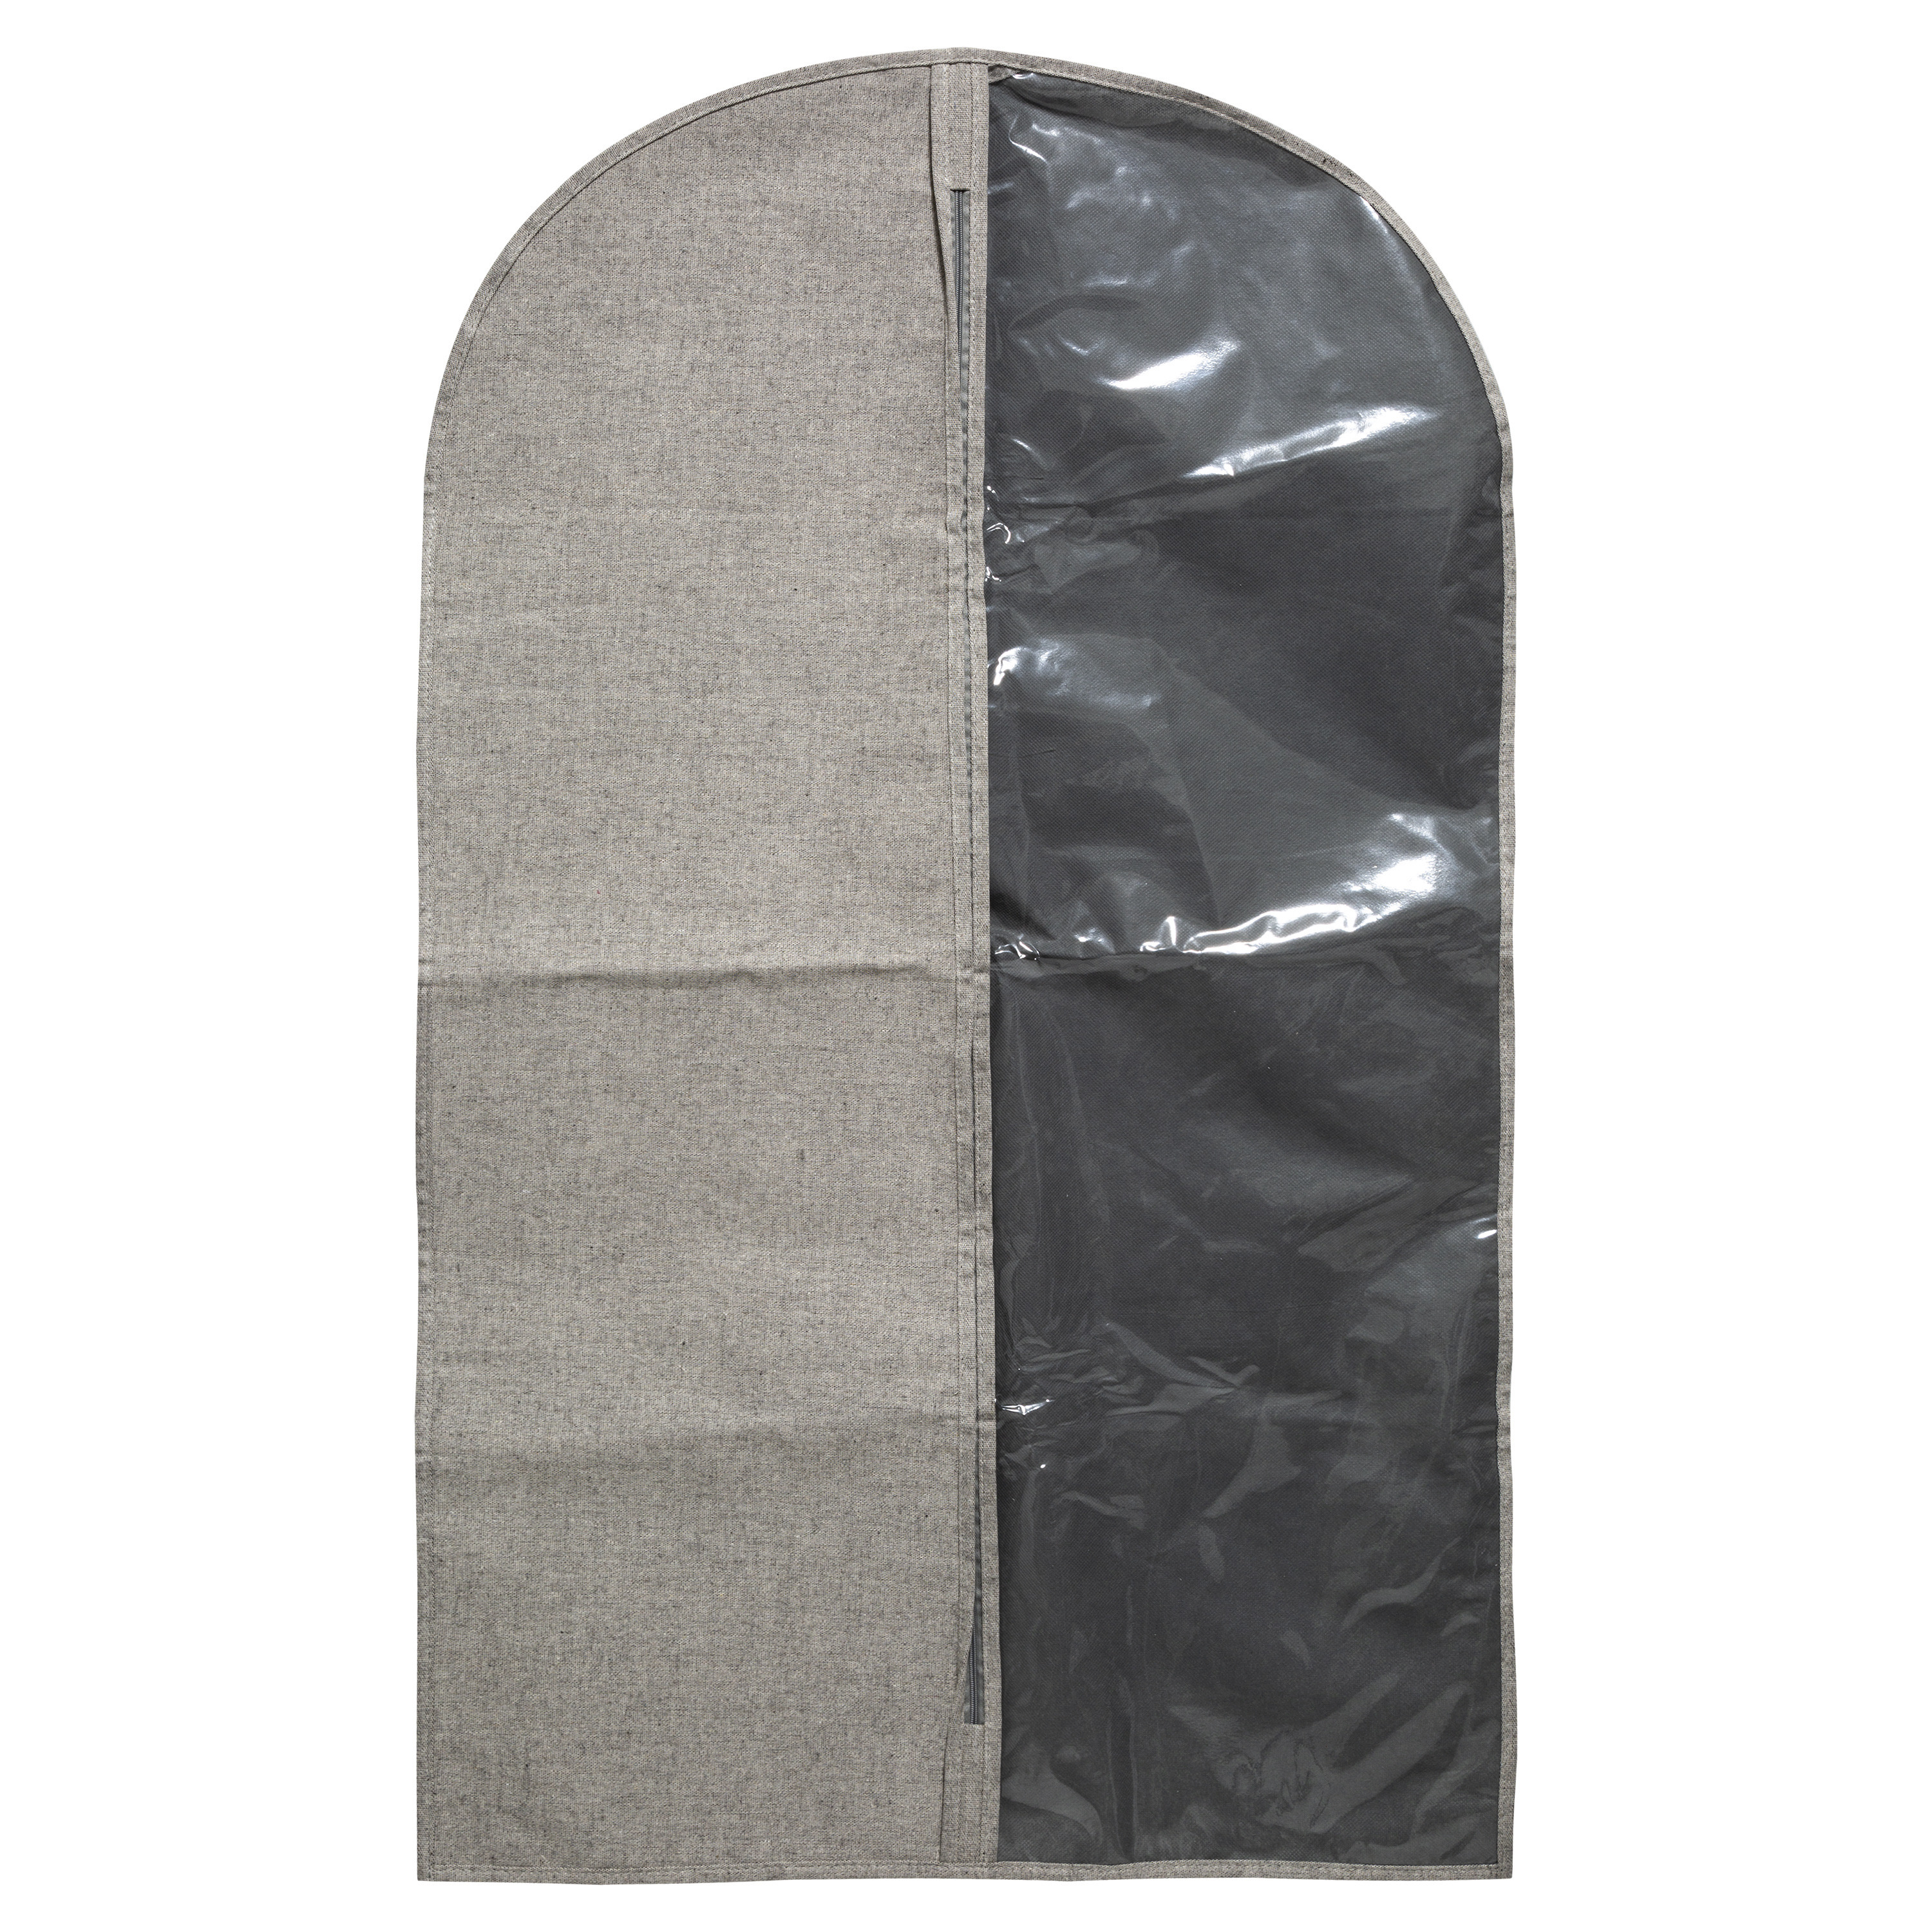 Kleding-beschermhoes polyester-katoen grijs 100 cm